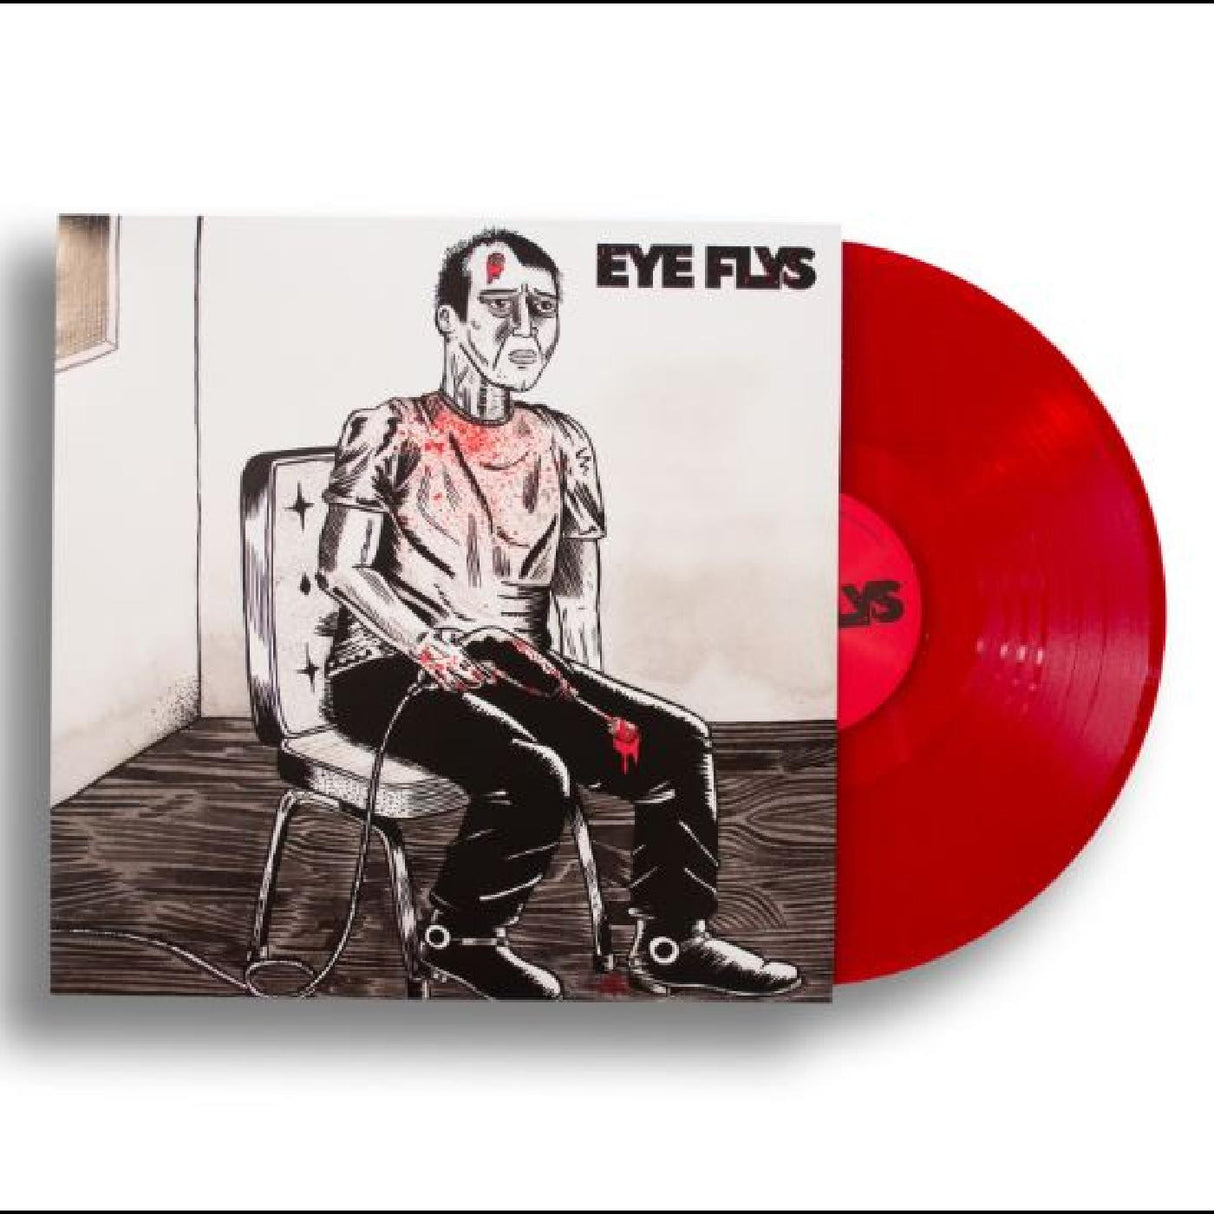 Eye Flys - Eye Flys (Indie Exclusive, Trans Red) [Vinyl]